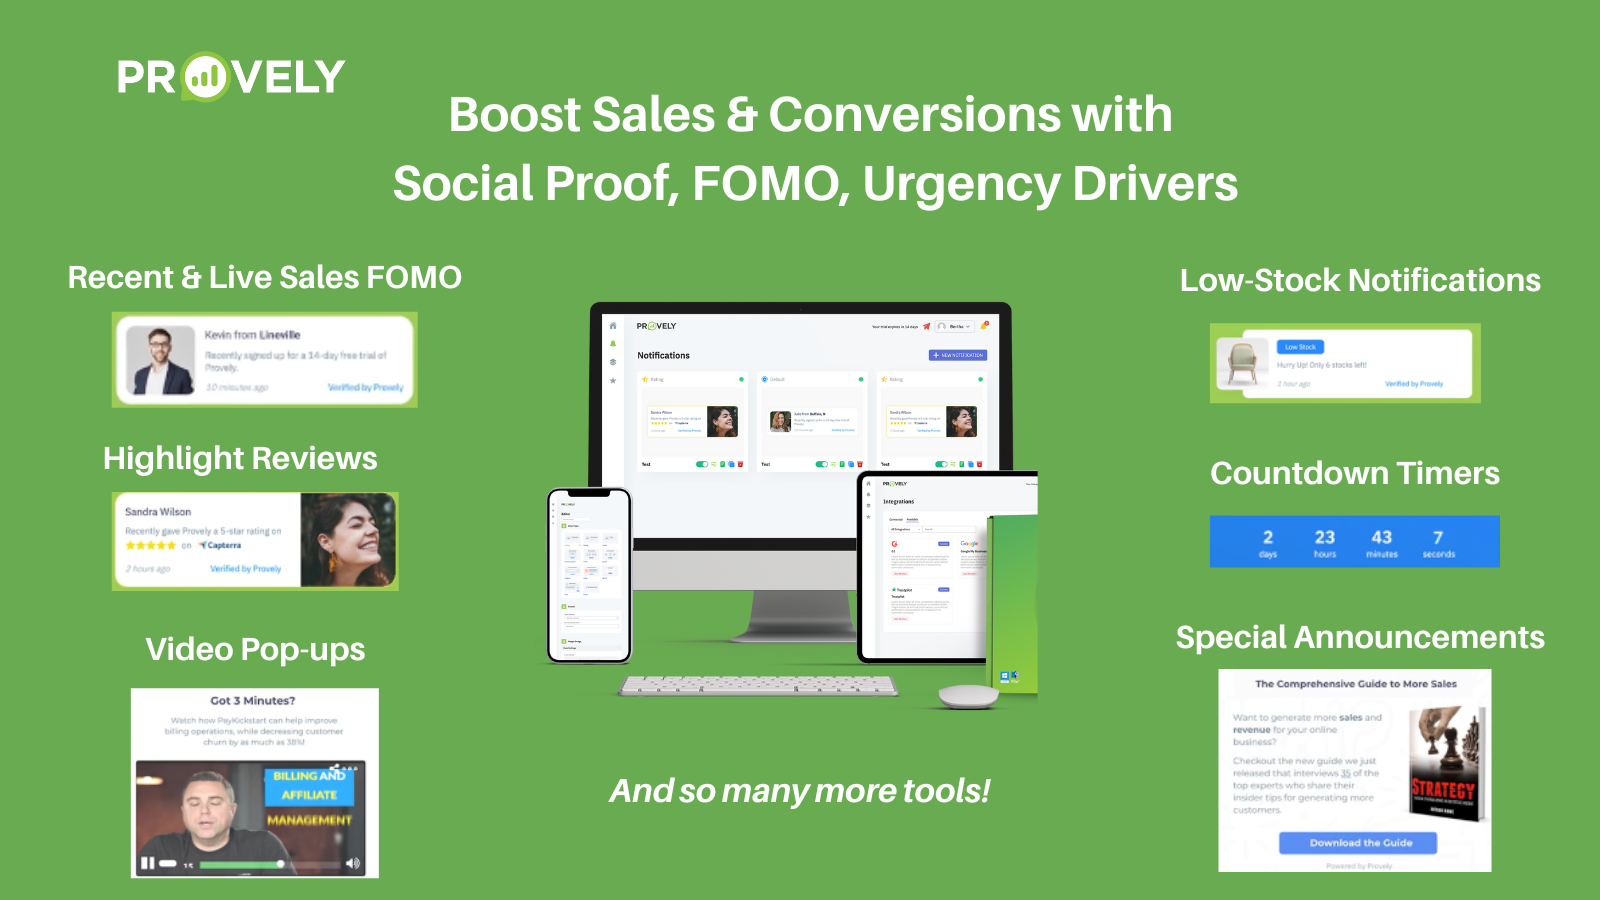 Application de conversion Provely Social Proof et FOMO